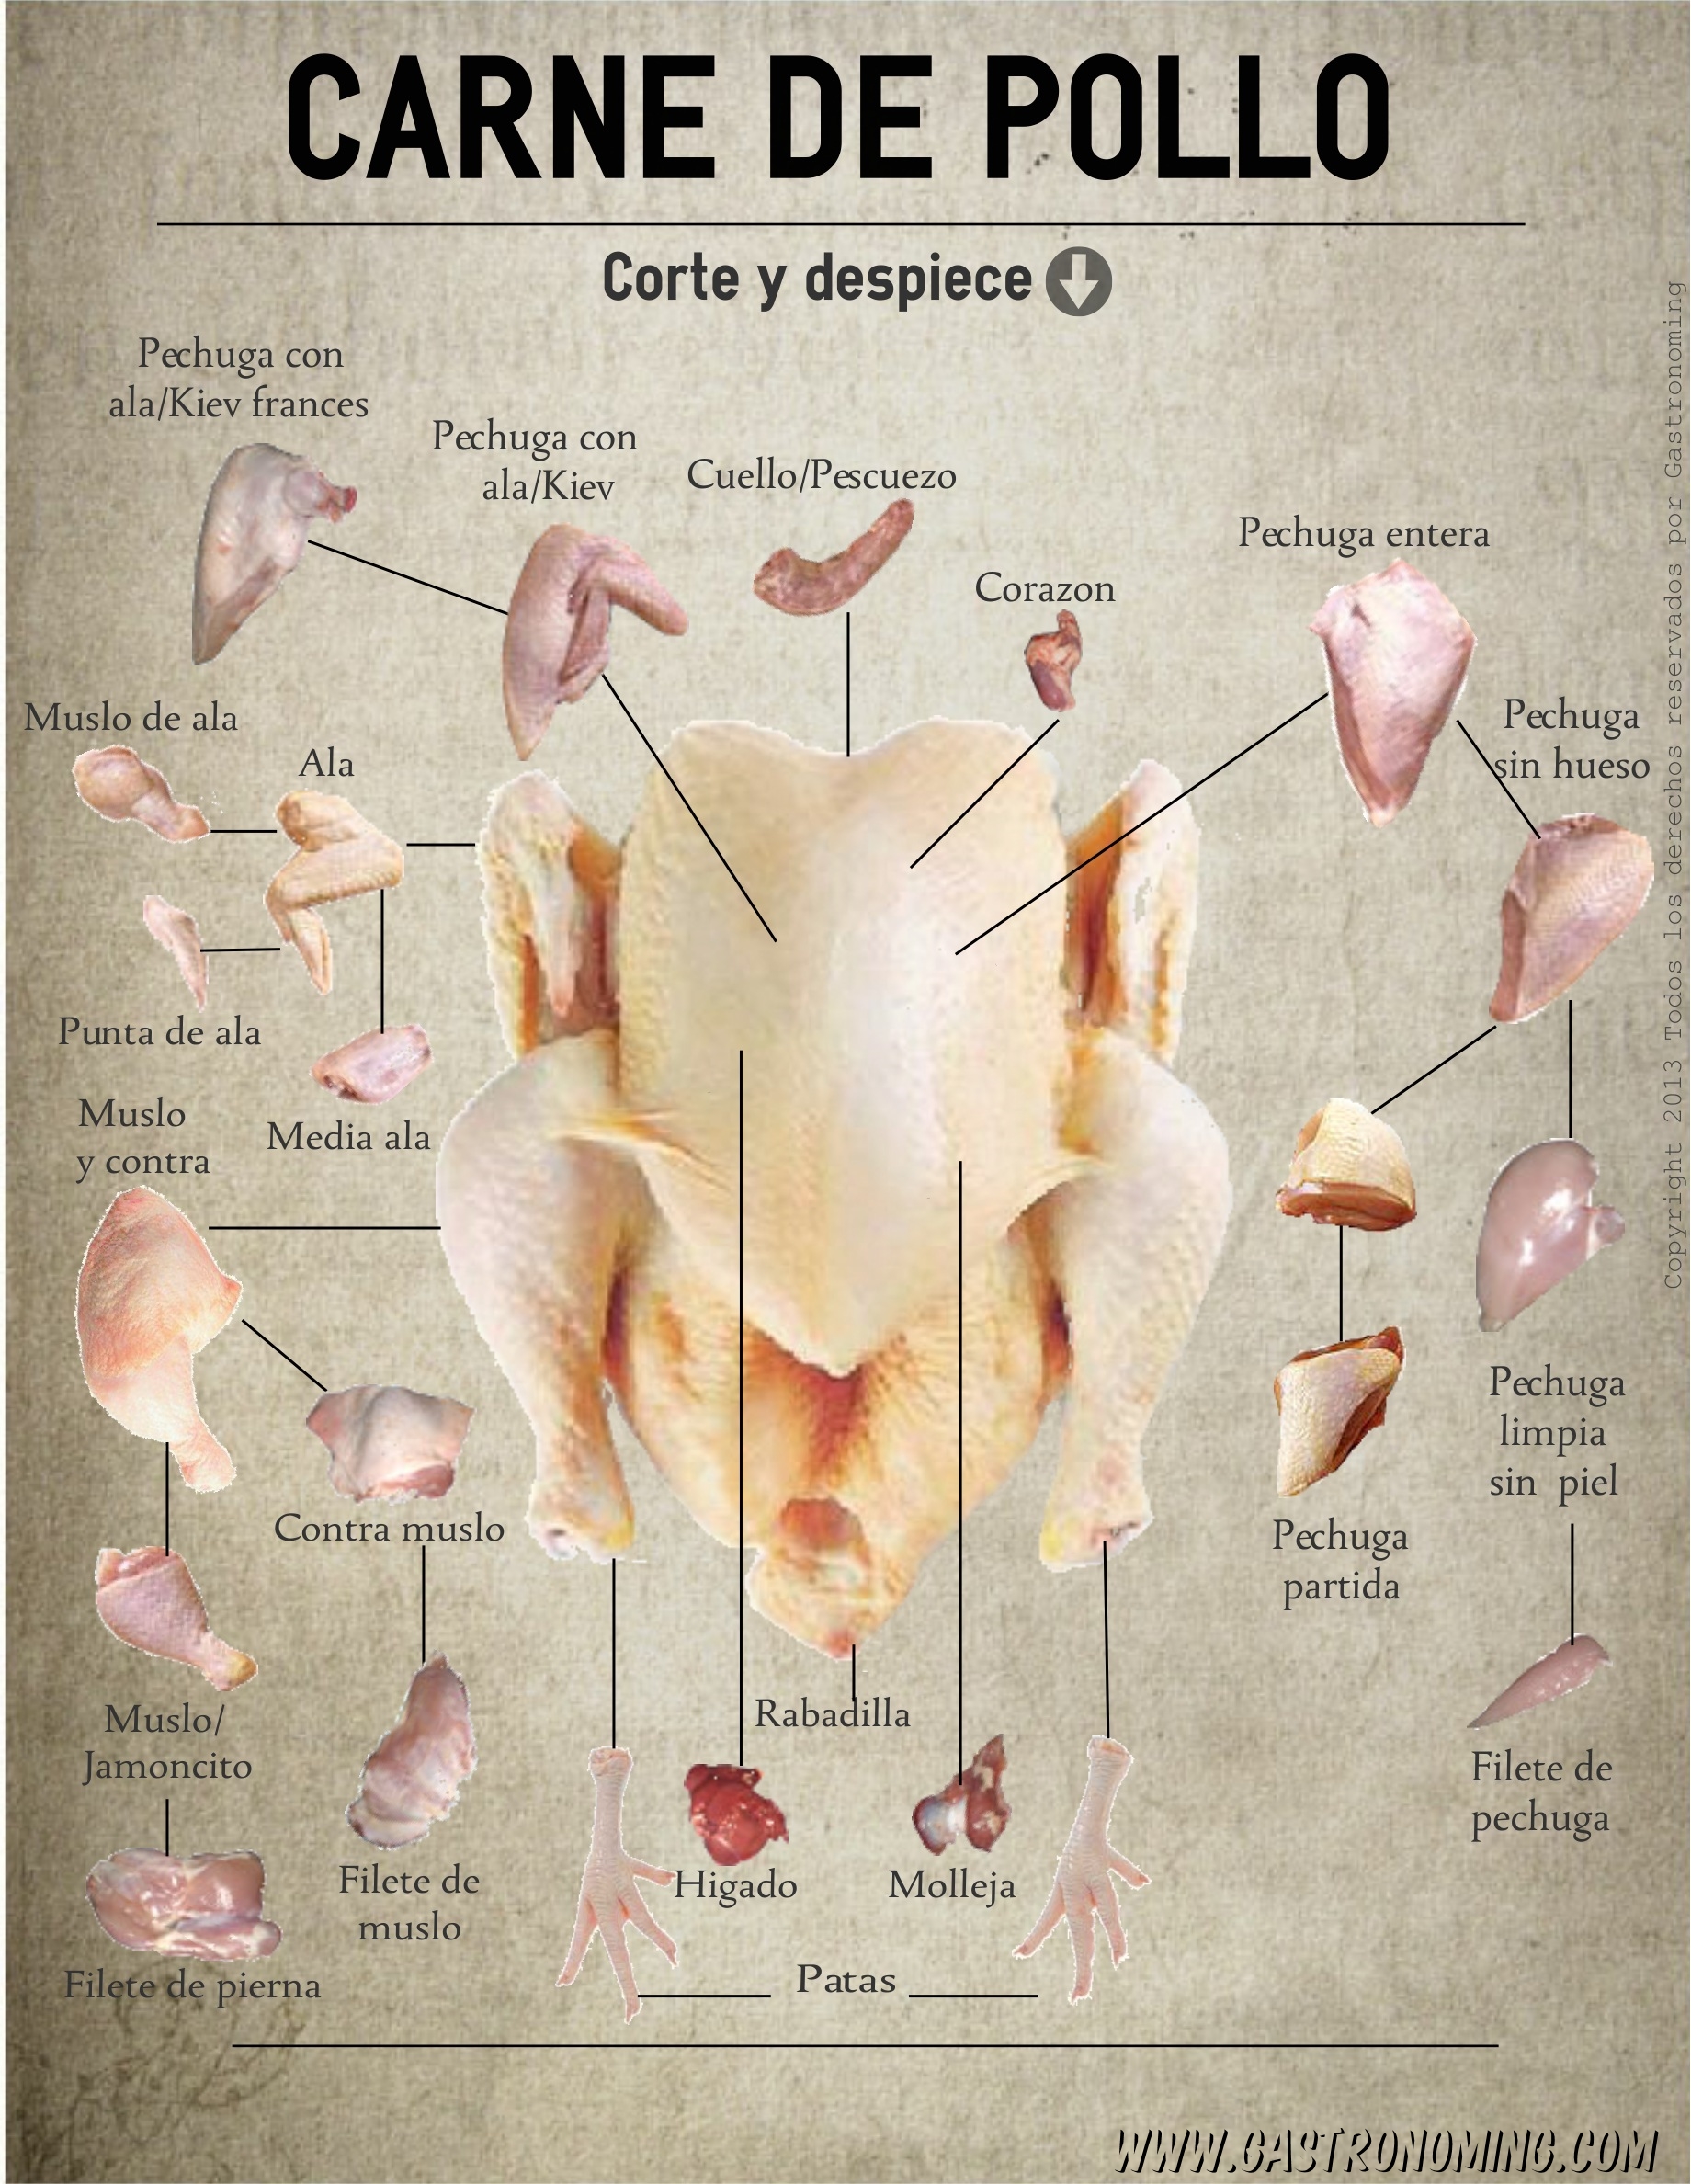 Carne de pollo, corte y despiece - Gastronoming – Gastronoming